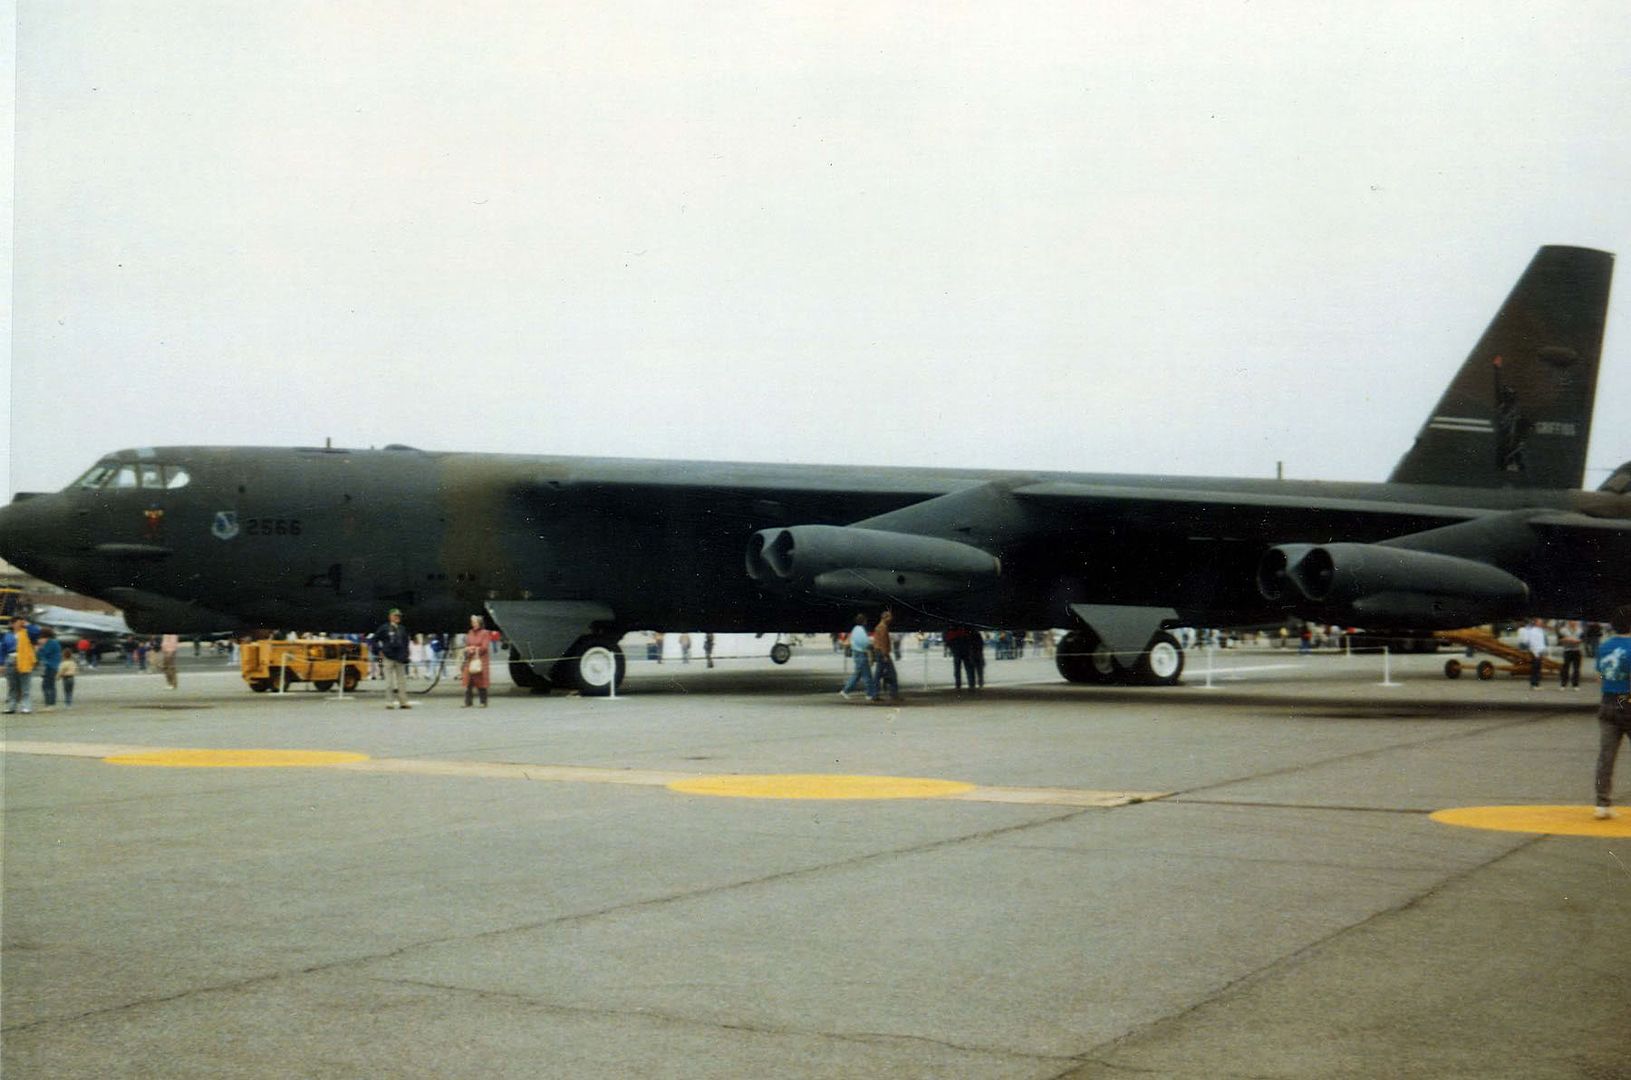 Boeing_B-52G_061026-F-1234S-022.jpg